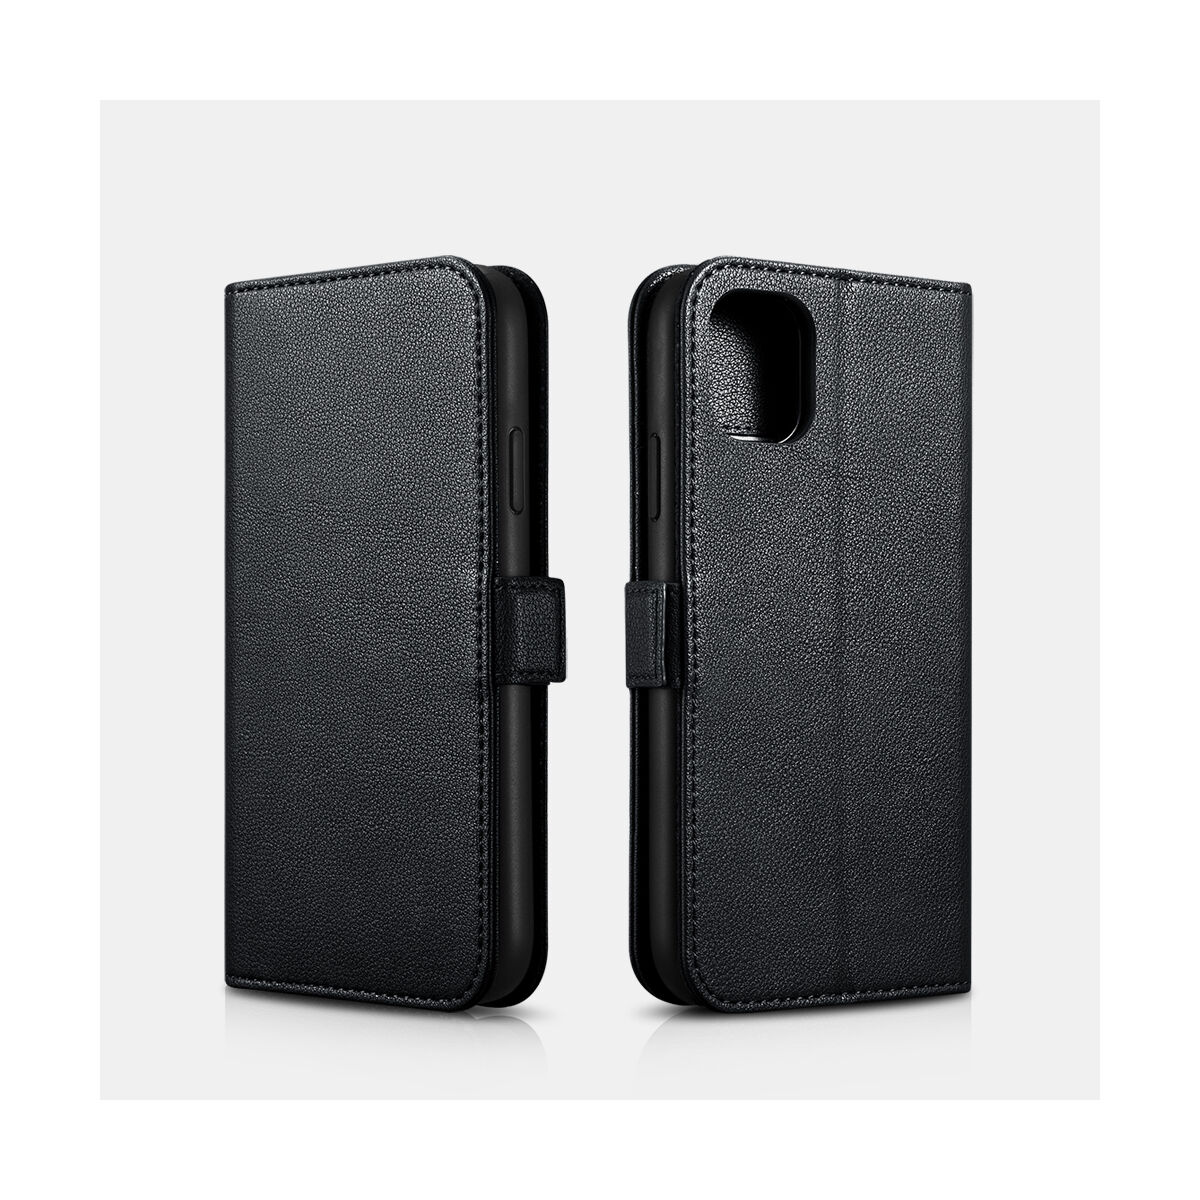 iCarer iPhone 11 Pro Max tok, Nappa Bőr Levehető 2-in-1 pénztárcatok, levehető kártyatartóval, fekete